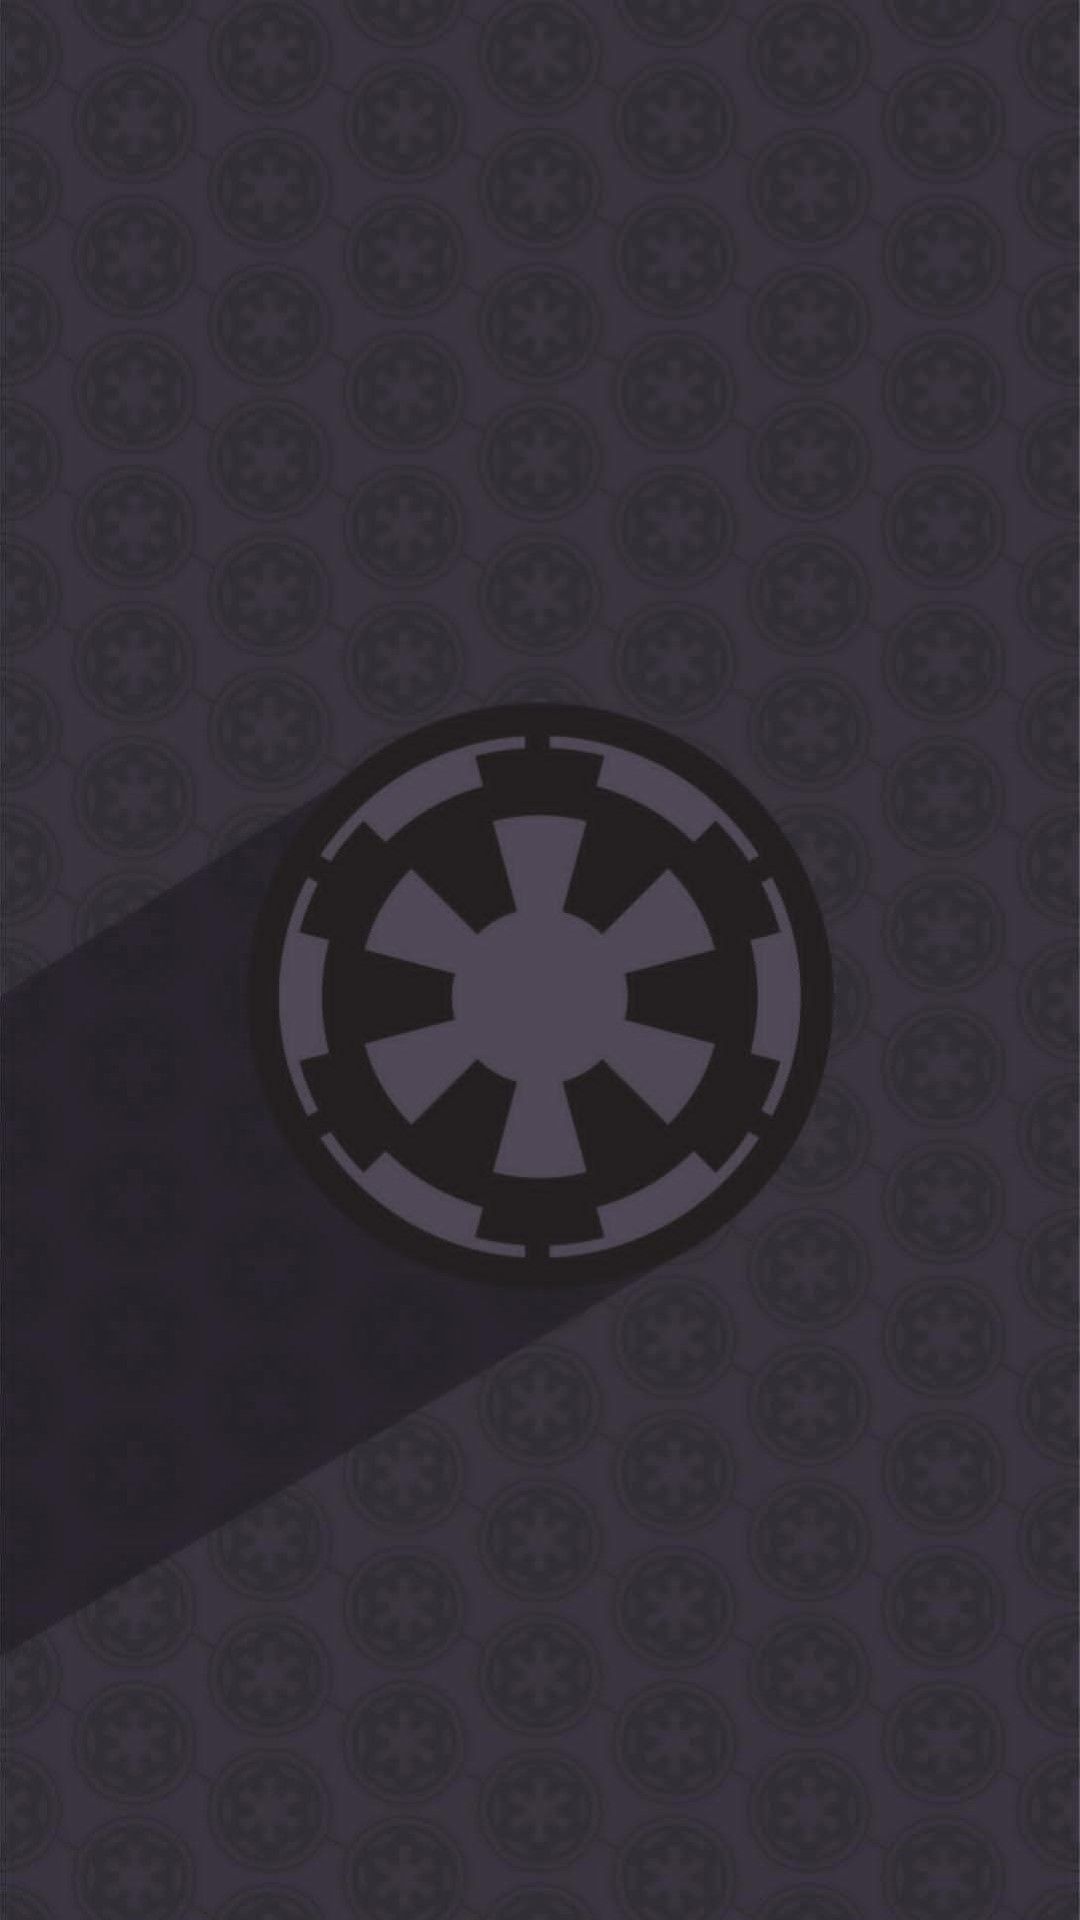 Imperial Star wars Star wars wallpaper Star Wars Stars